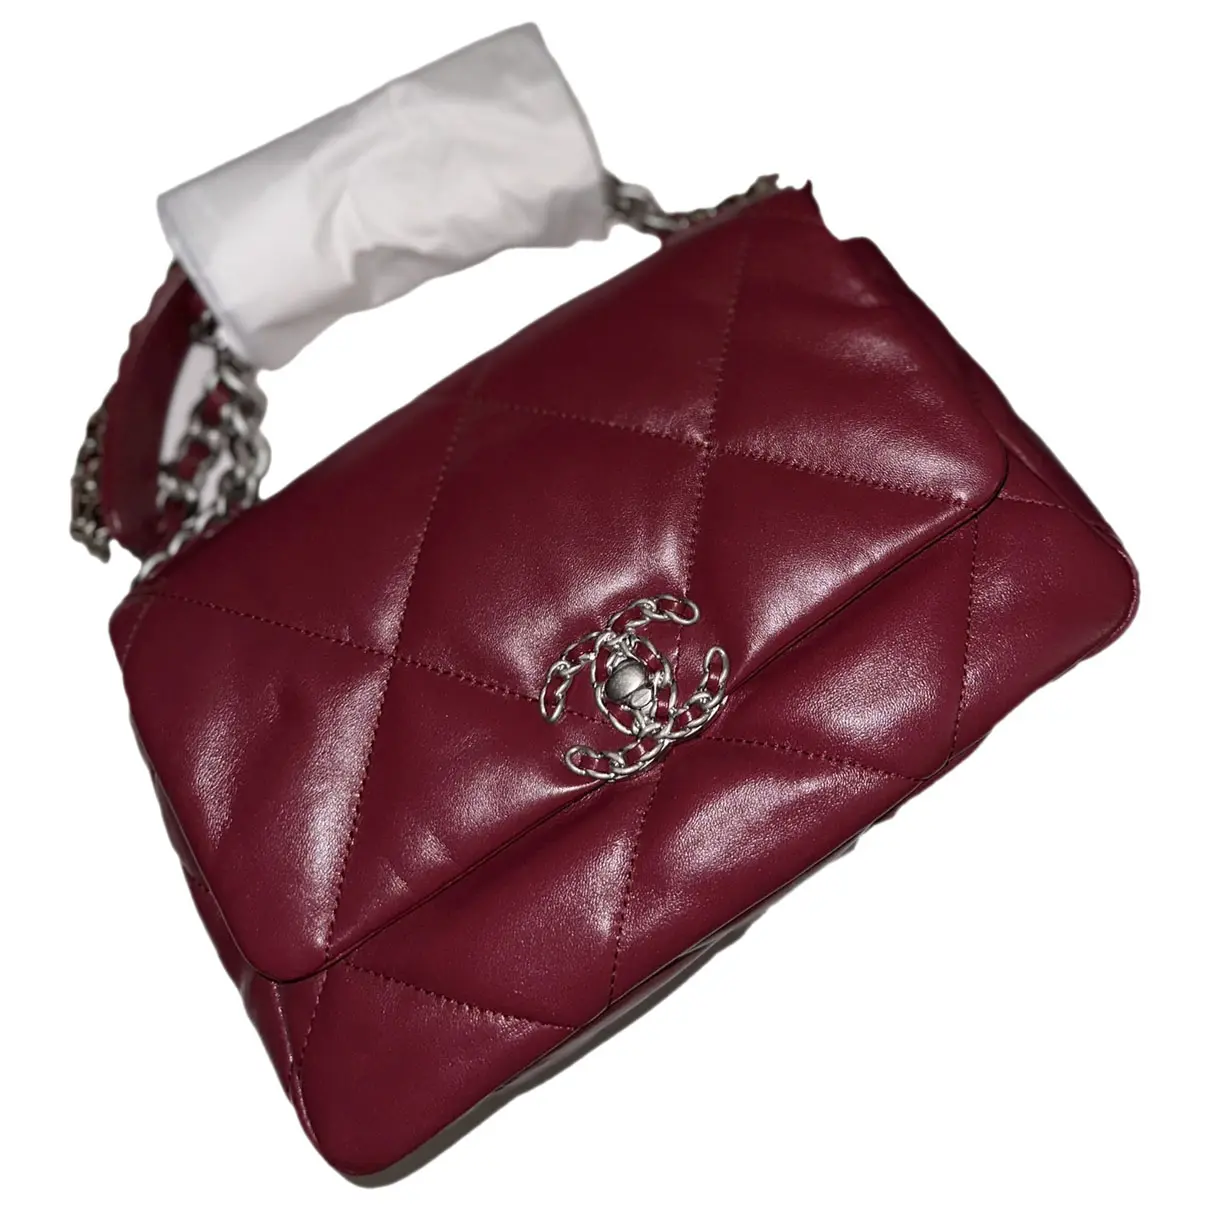 Business Affinity exotic leathers handbag